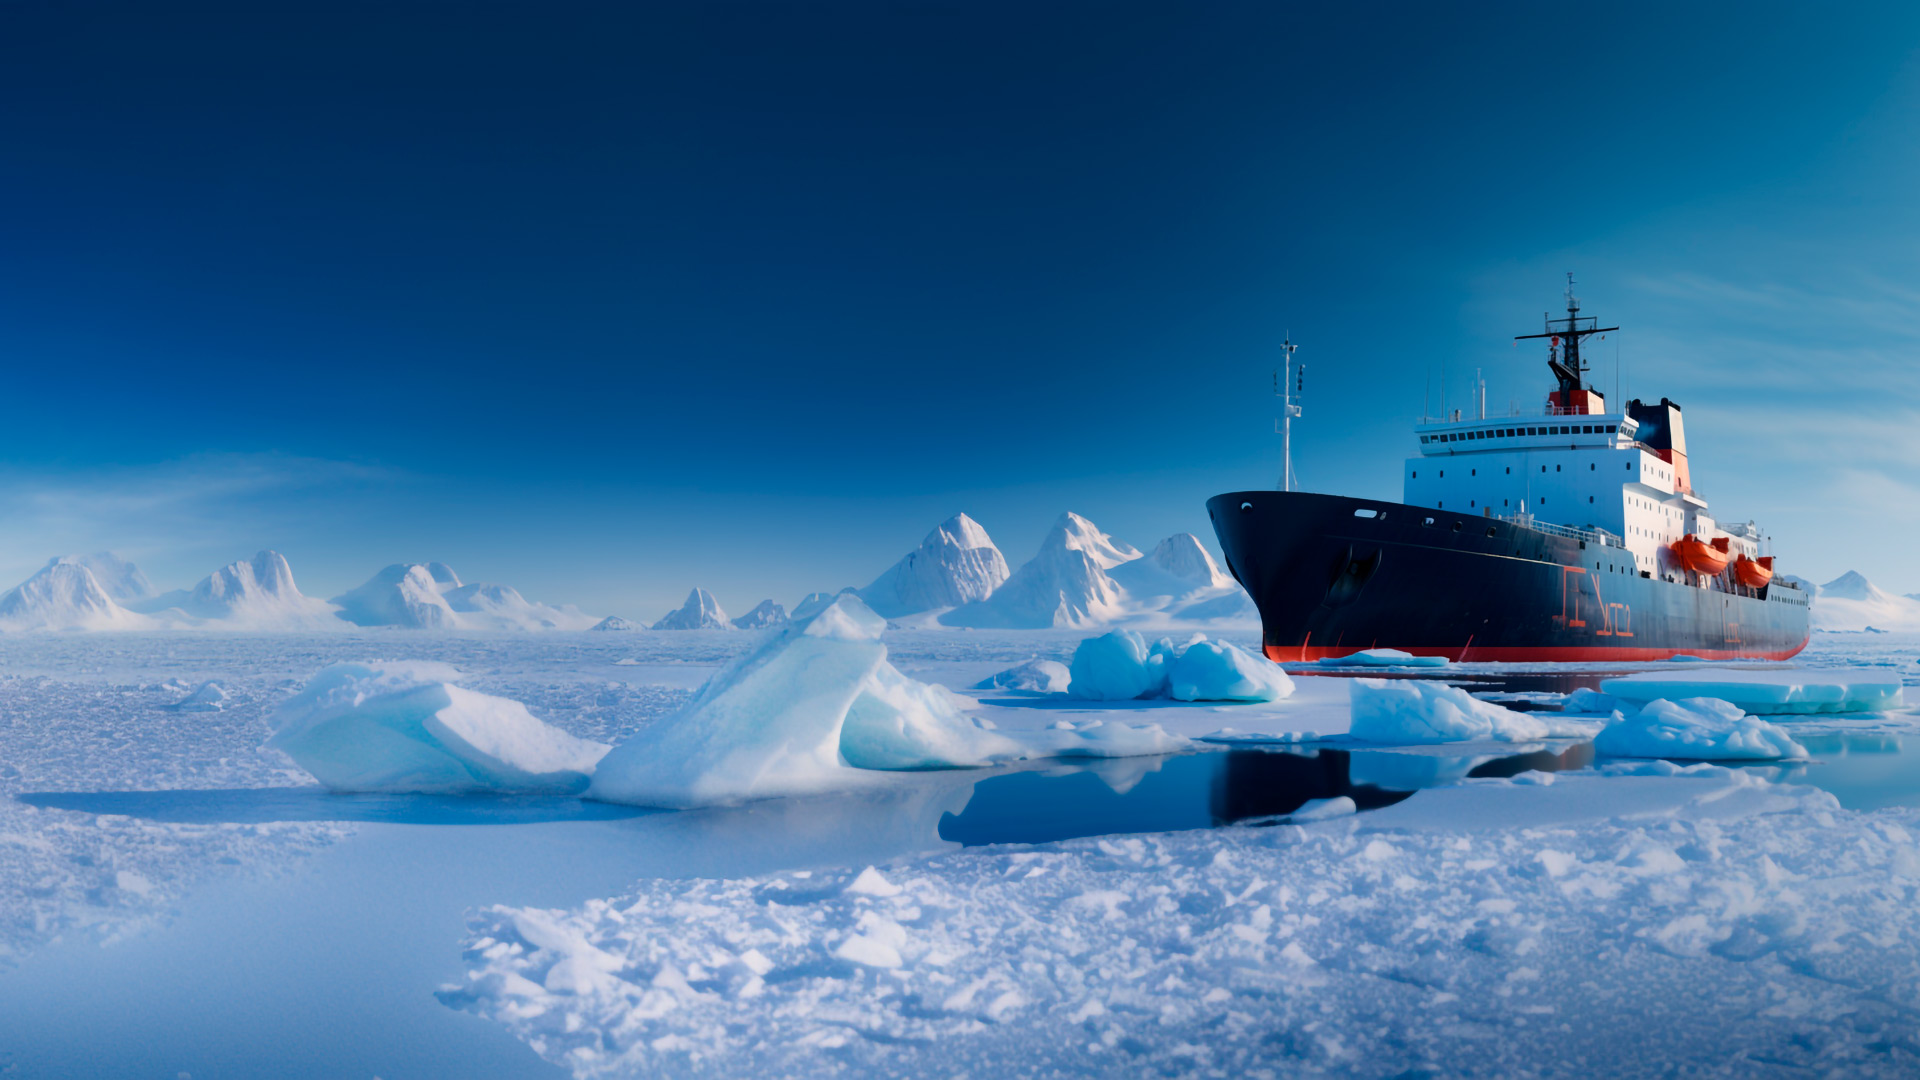 Das Bild zeigt ein Eisbrecher Schiff in der Antarktis